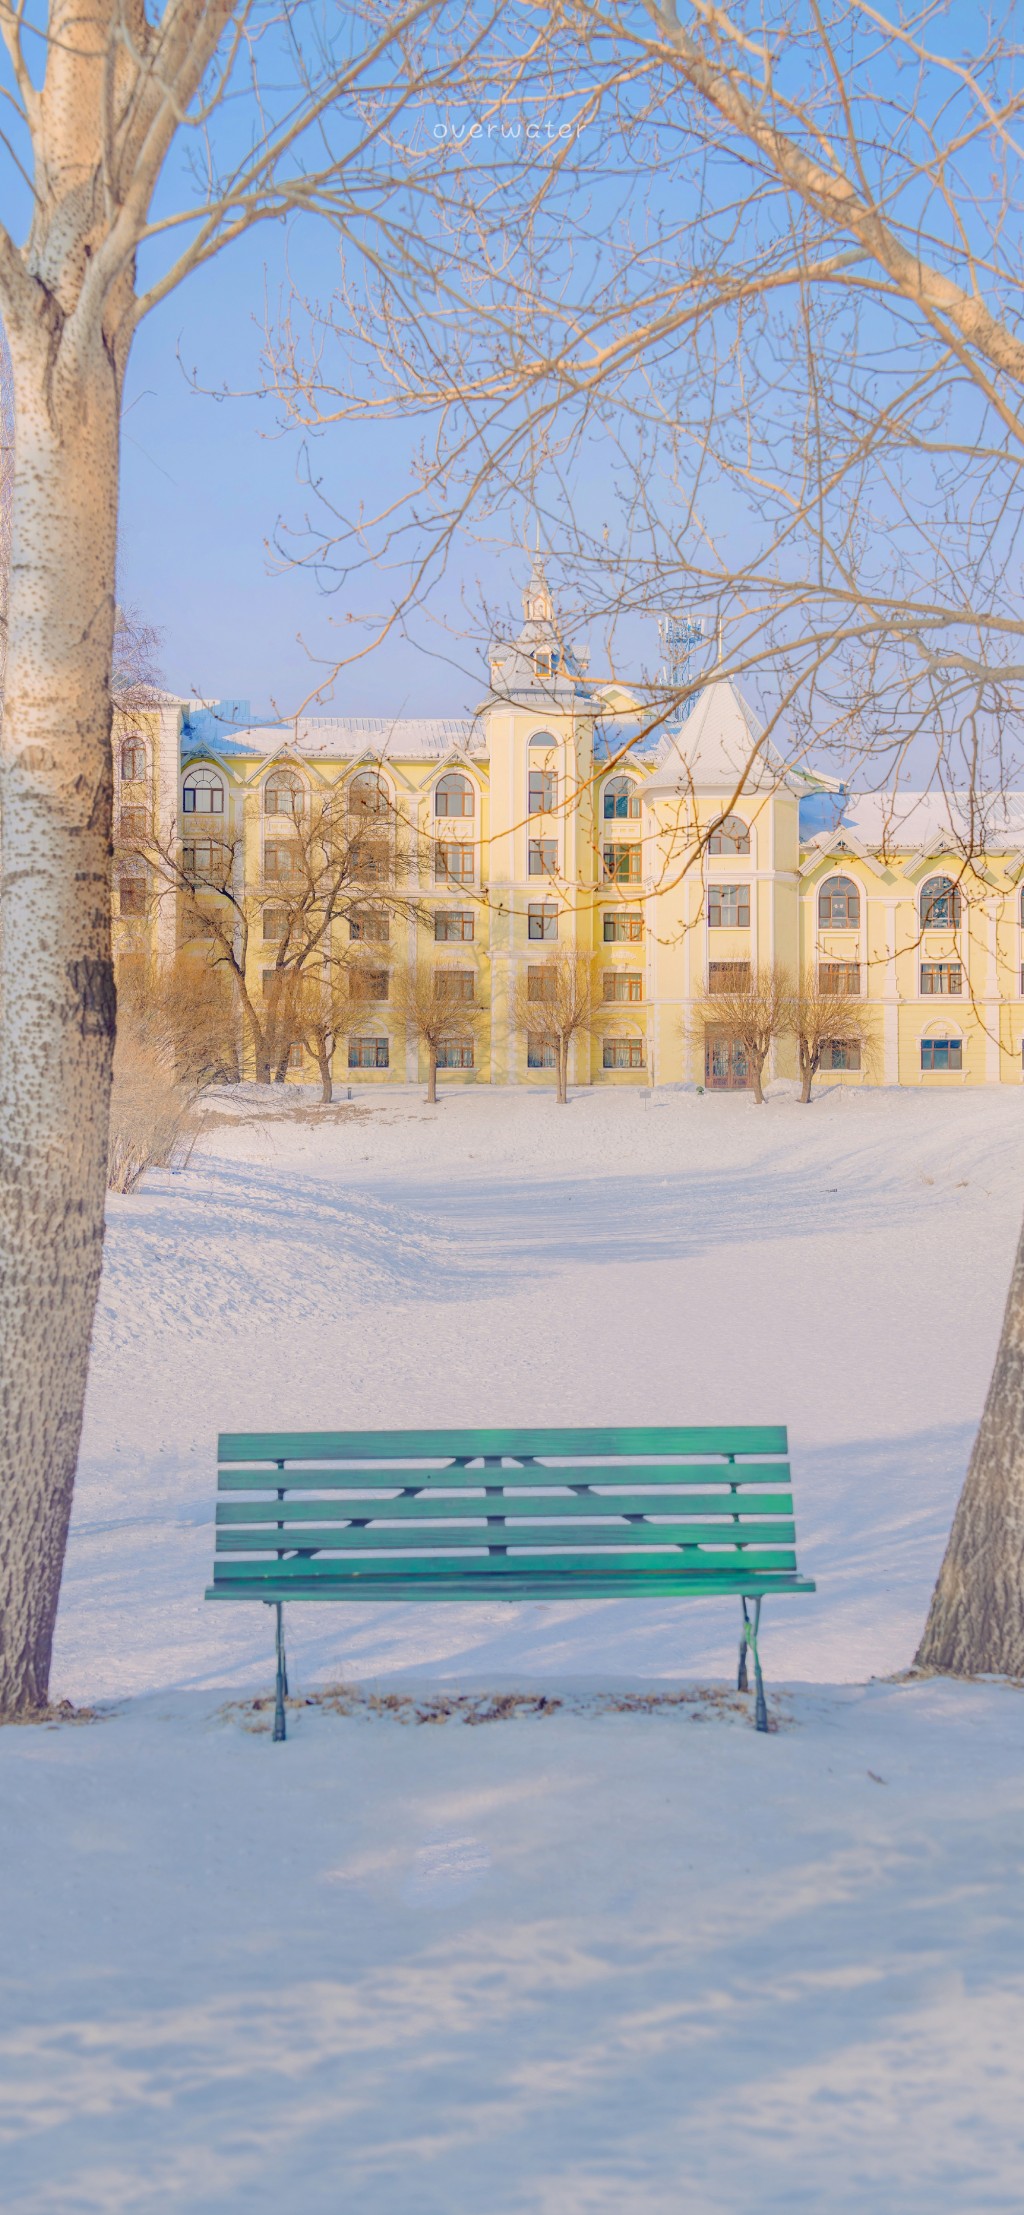 哈尔滨冰雪美景系列手机壁纸